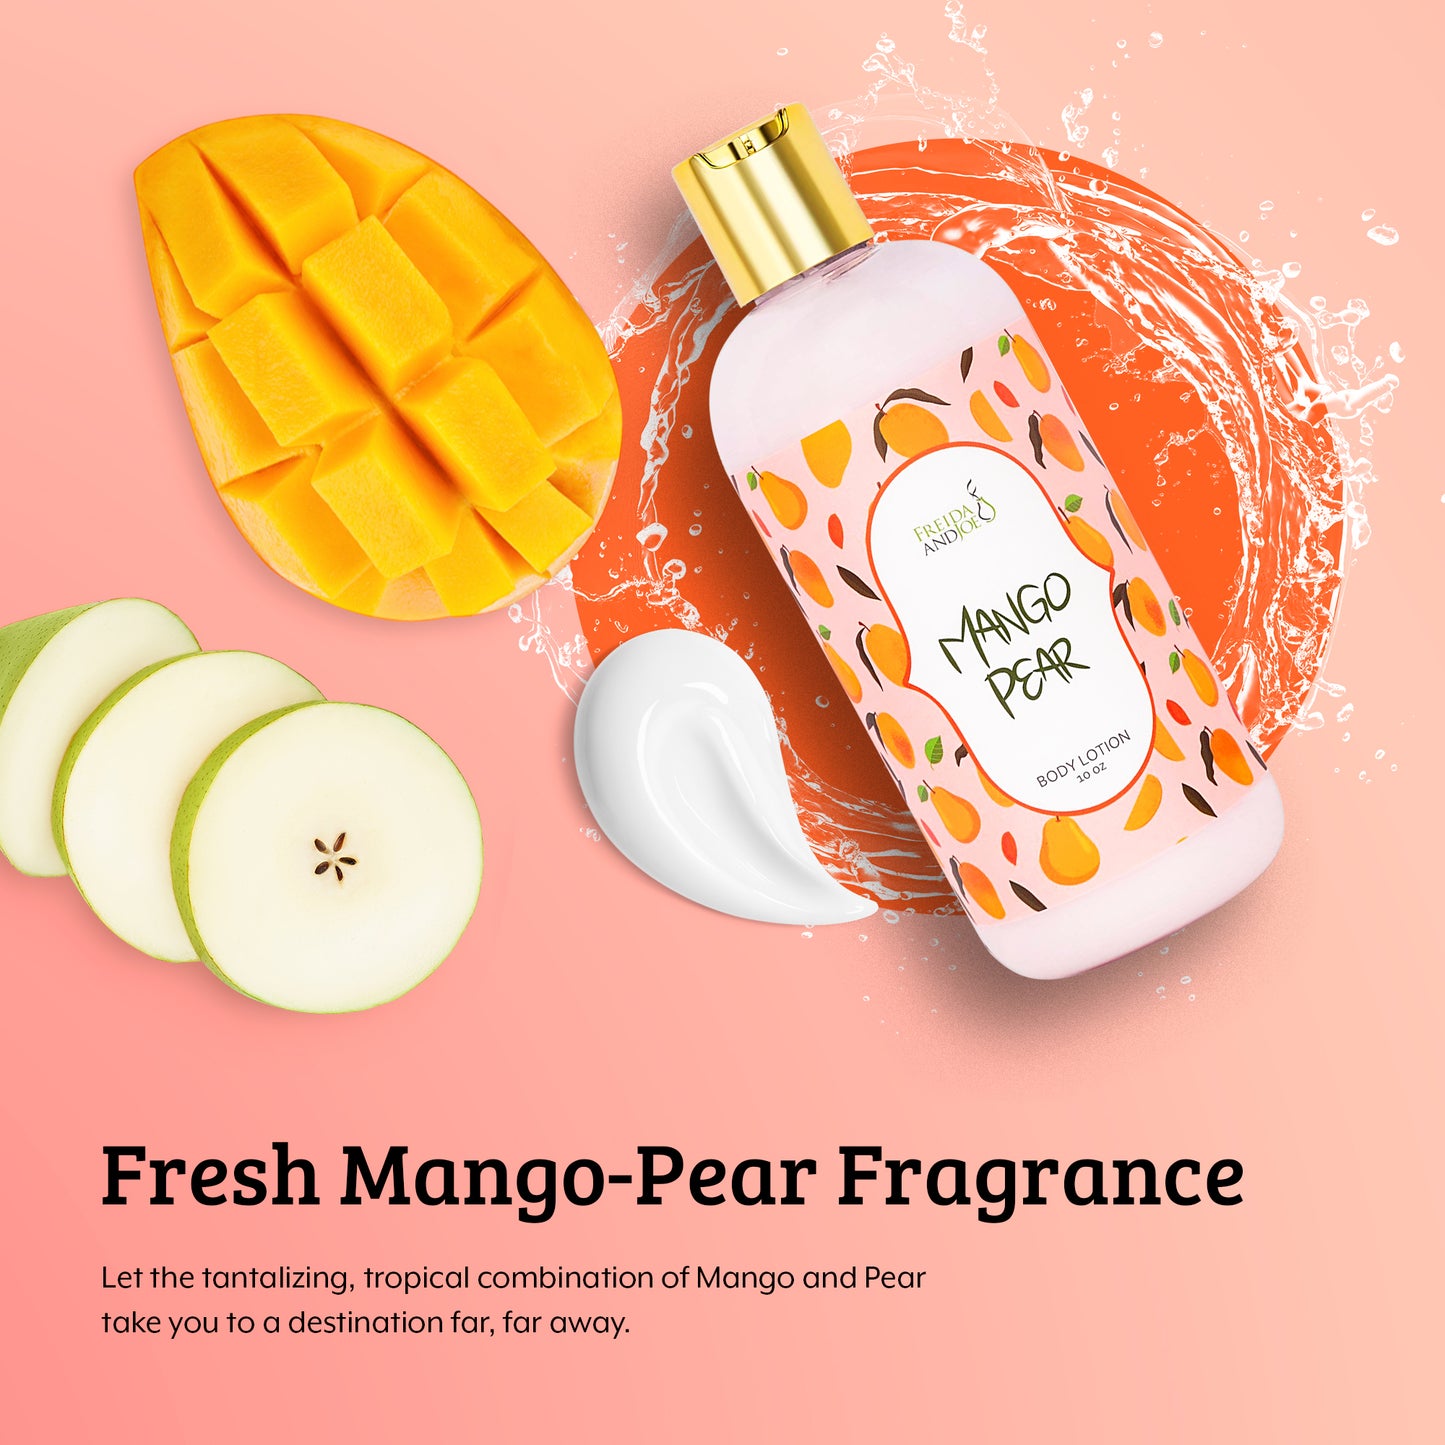 Mango Pear Fragrance Body Lotion in 10oz Bottle